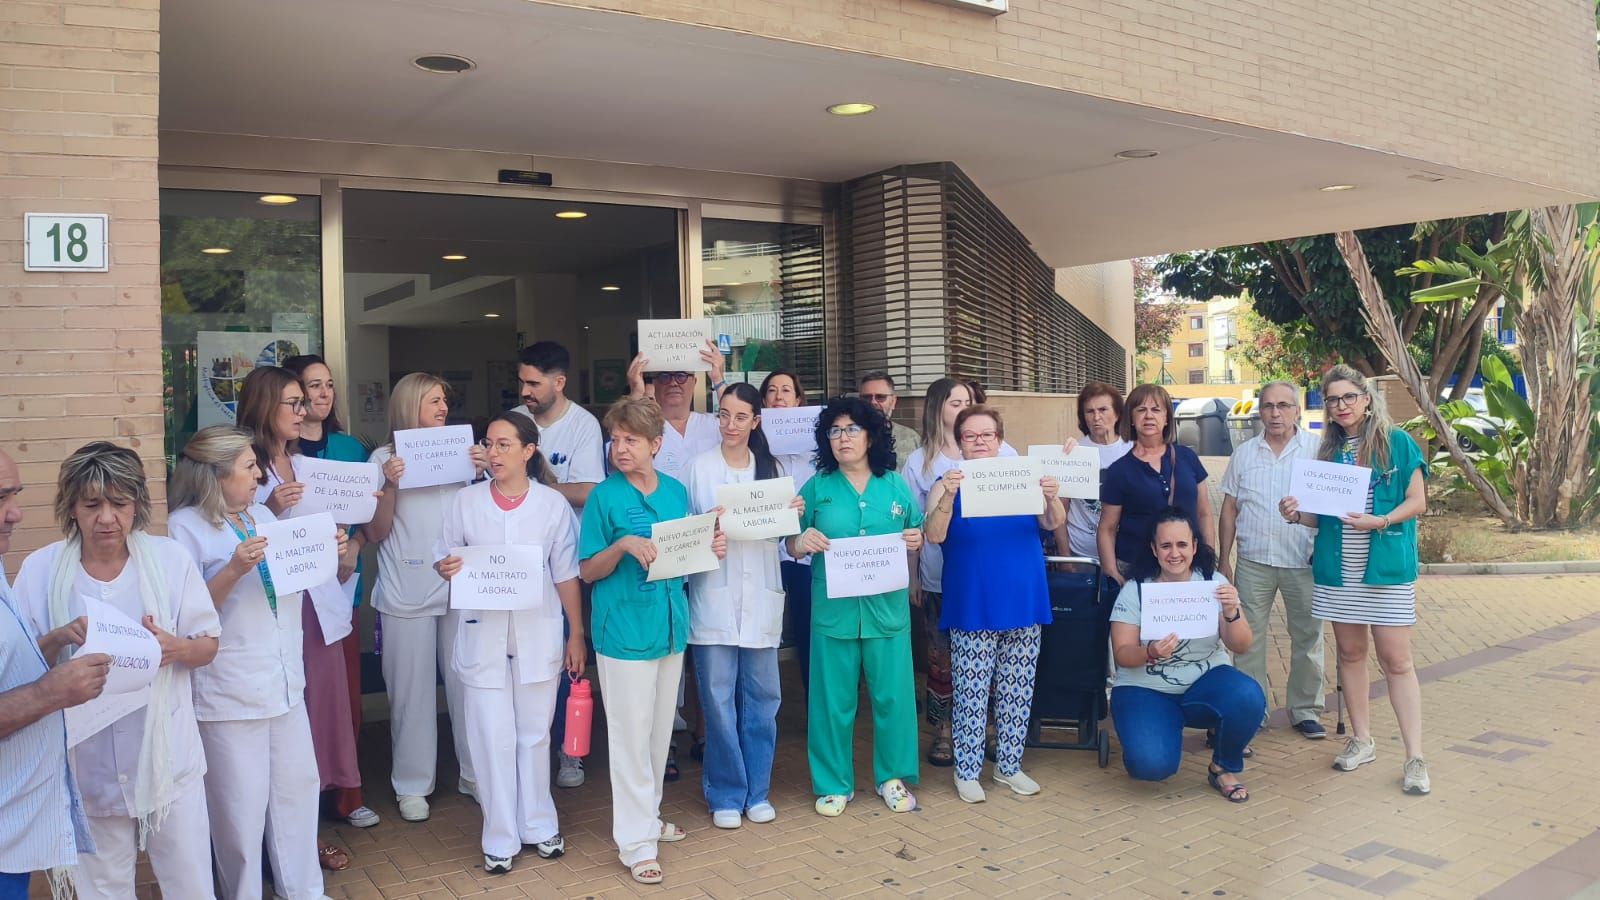 Huelga de sanitarios en los centros de salud y hospitales de Málaga